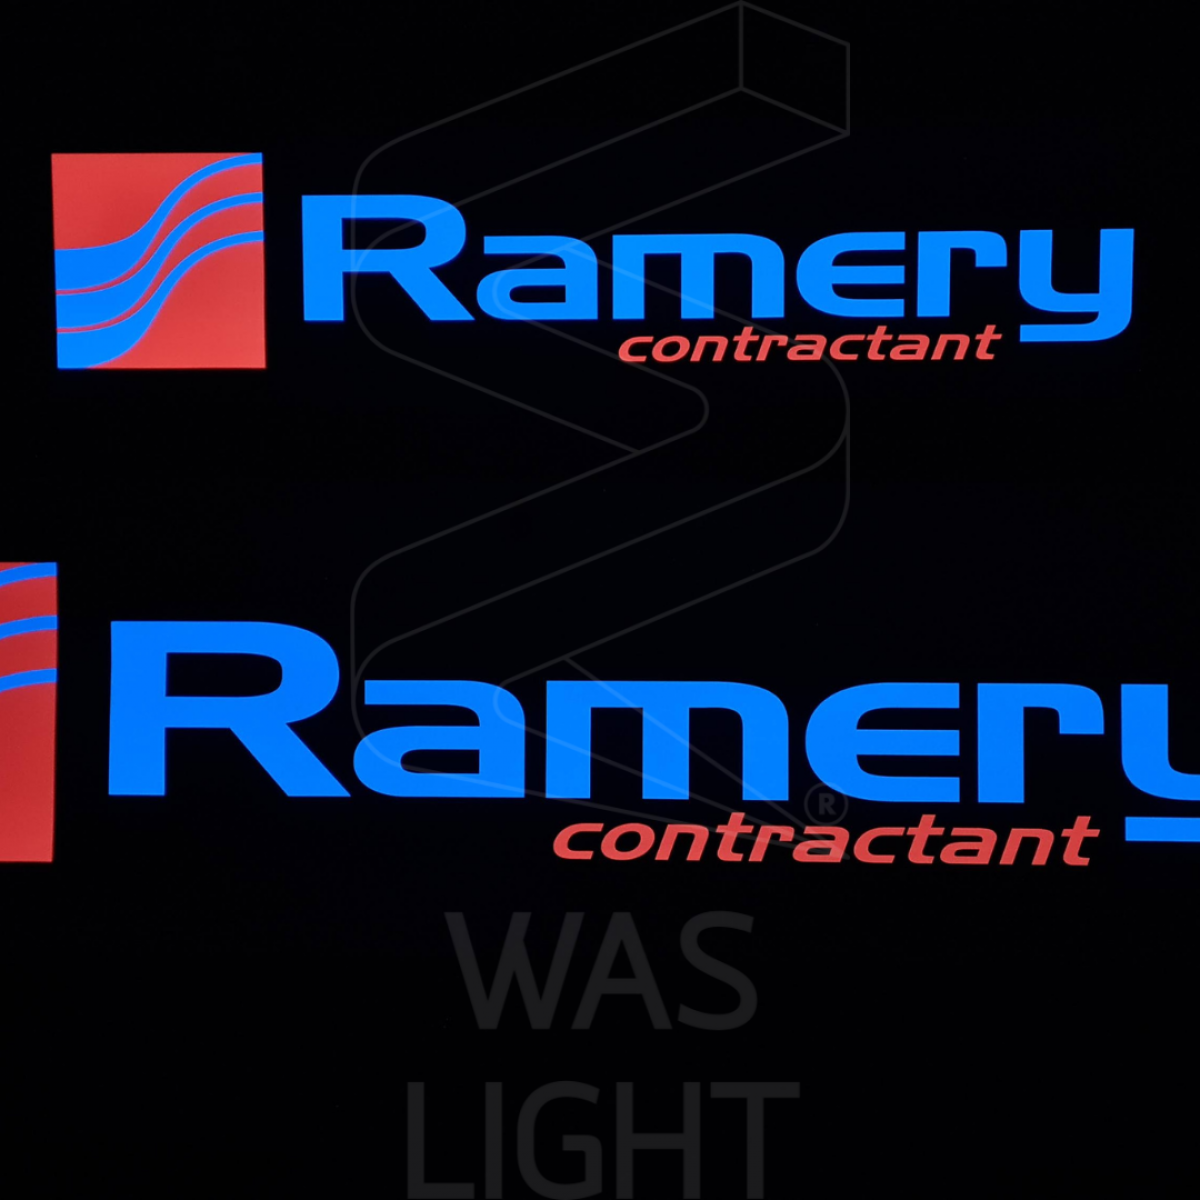 Conception et production d'une bâche électroluminescente destinée à toute la France pour le constructeur Ramery